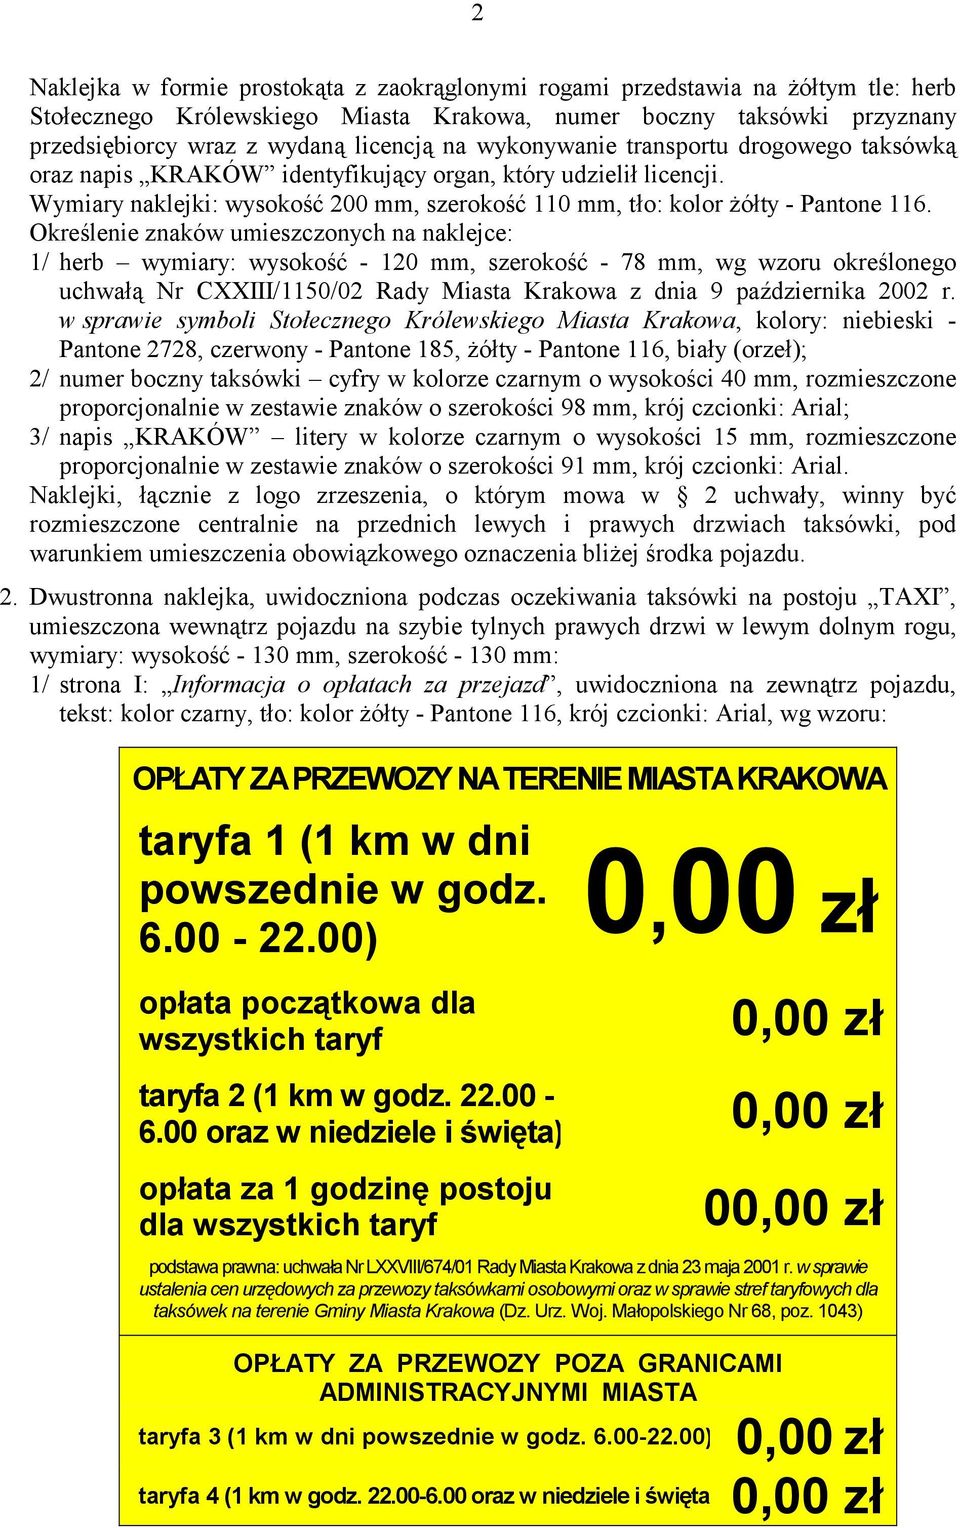 Określenie znaków umieszczonych na naklejce: 1/ herb wymiary: wysokość - 120 mm, szerokość - 78 mm, wg wzoru określonego uchwałą Nr CXXIII/1150/02 Rady Miasta Krakowa z dnia 9 października 2002 r.